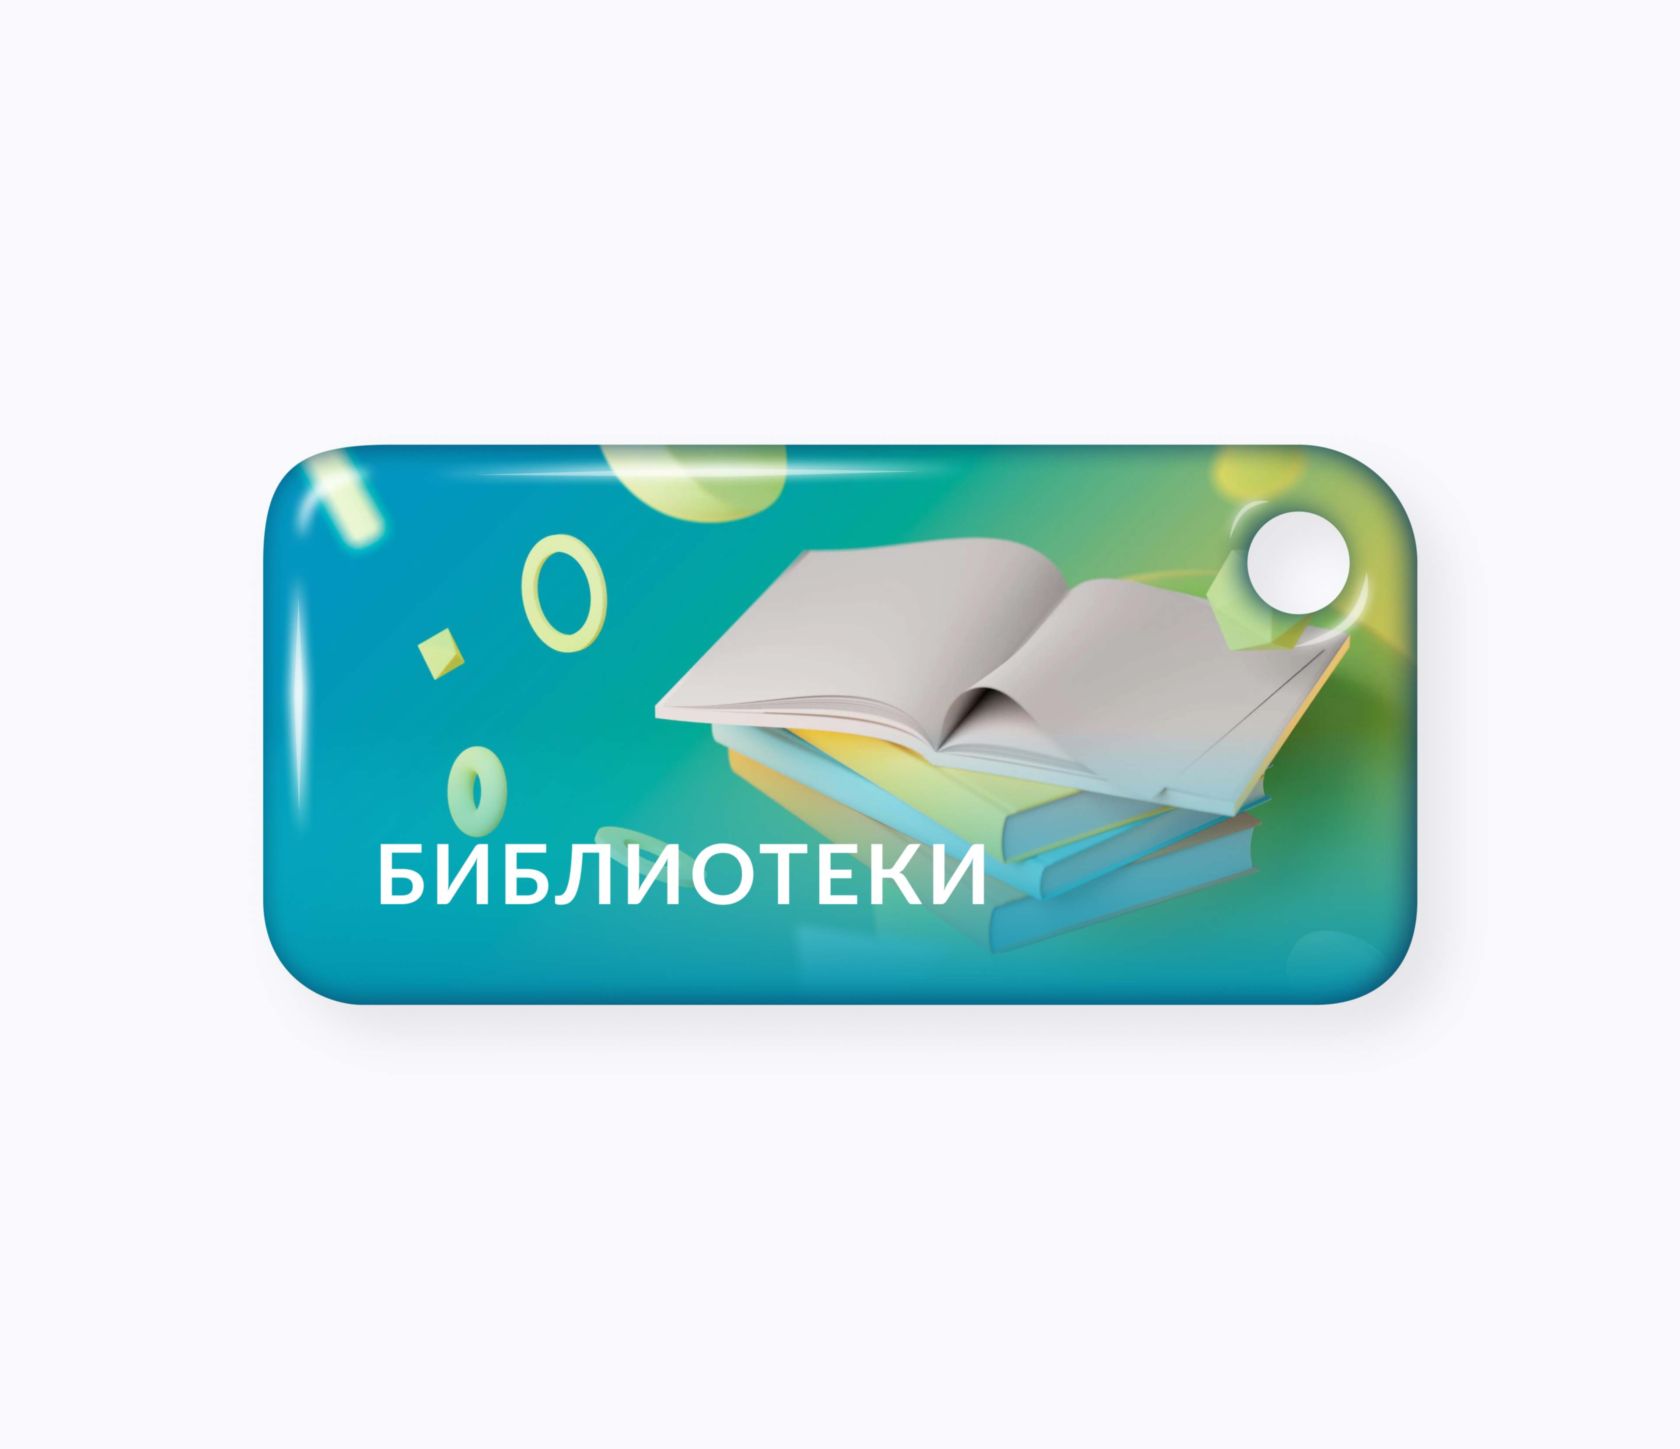 Брелок для библиотеки RFID RFID-Брелок NEOKEY® с чипом для библиотеки